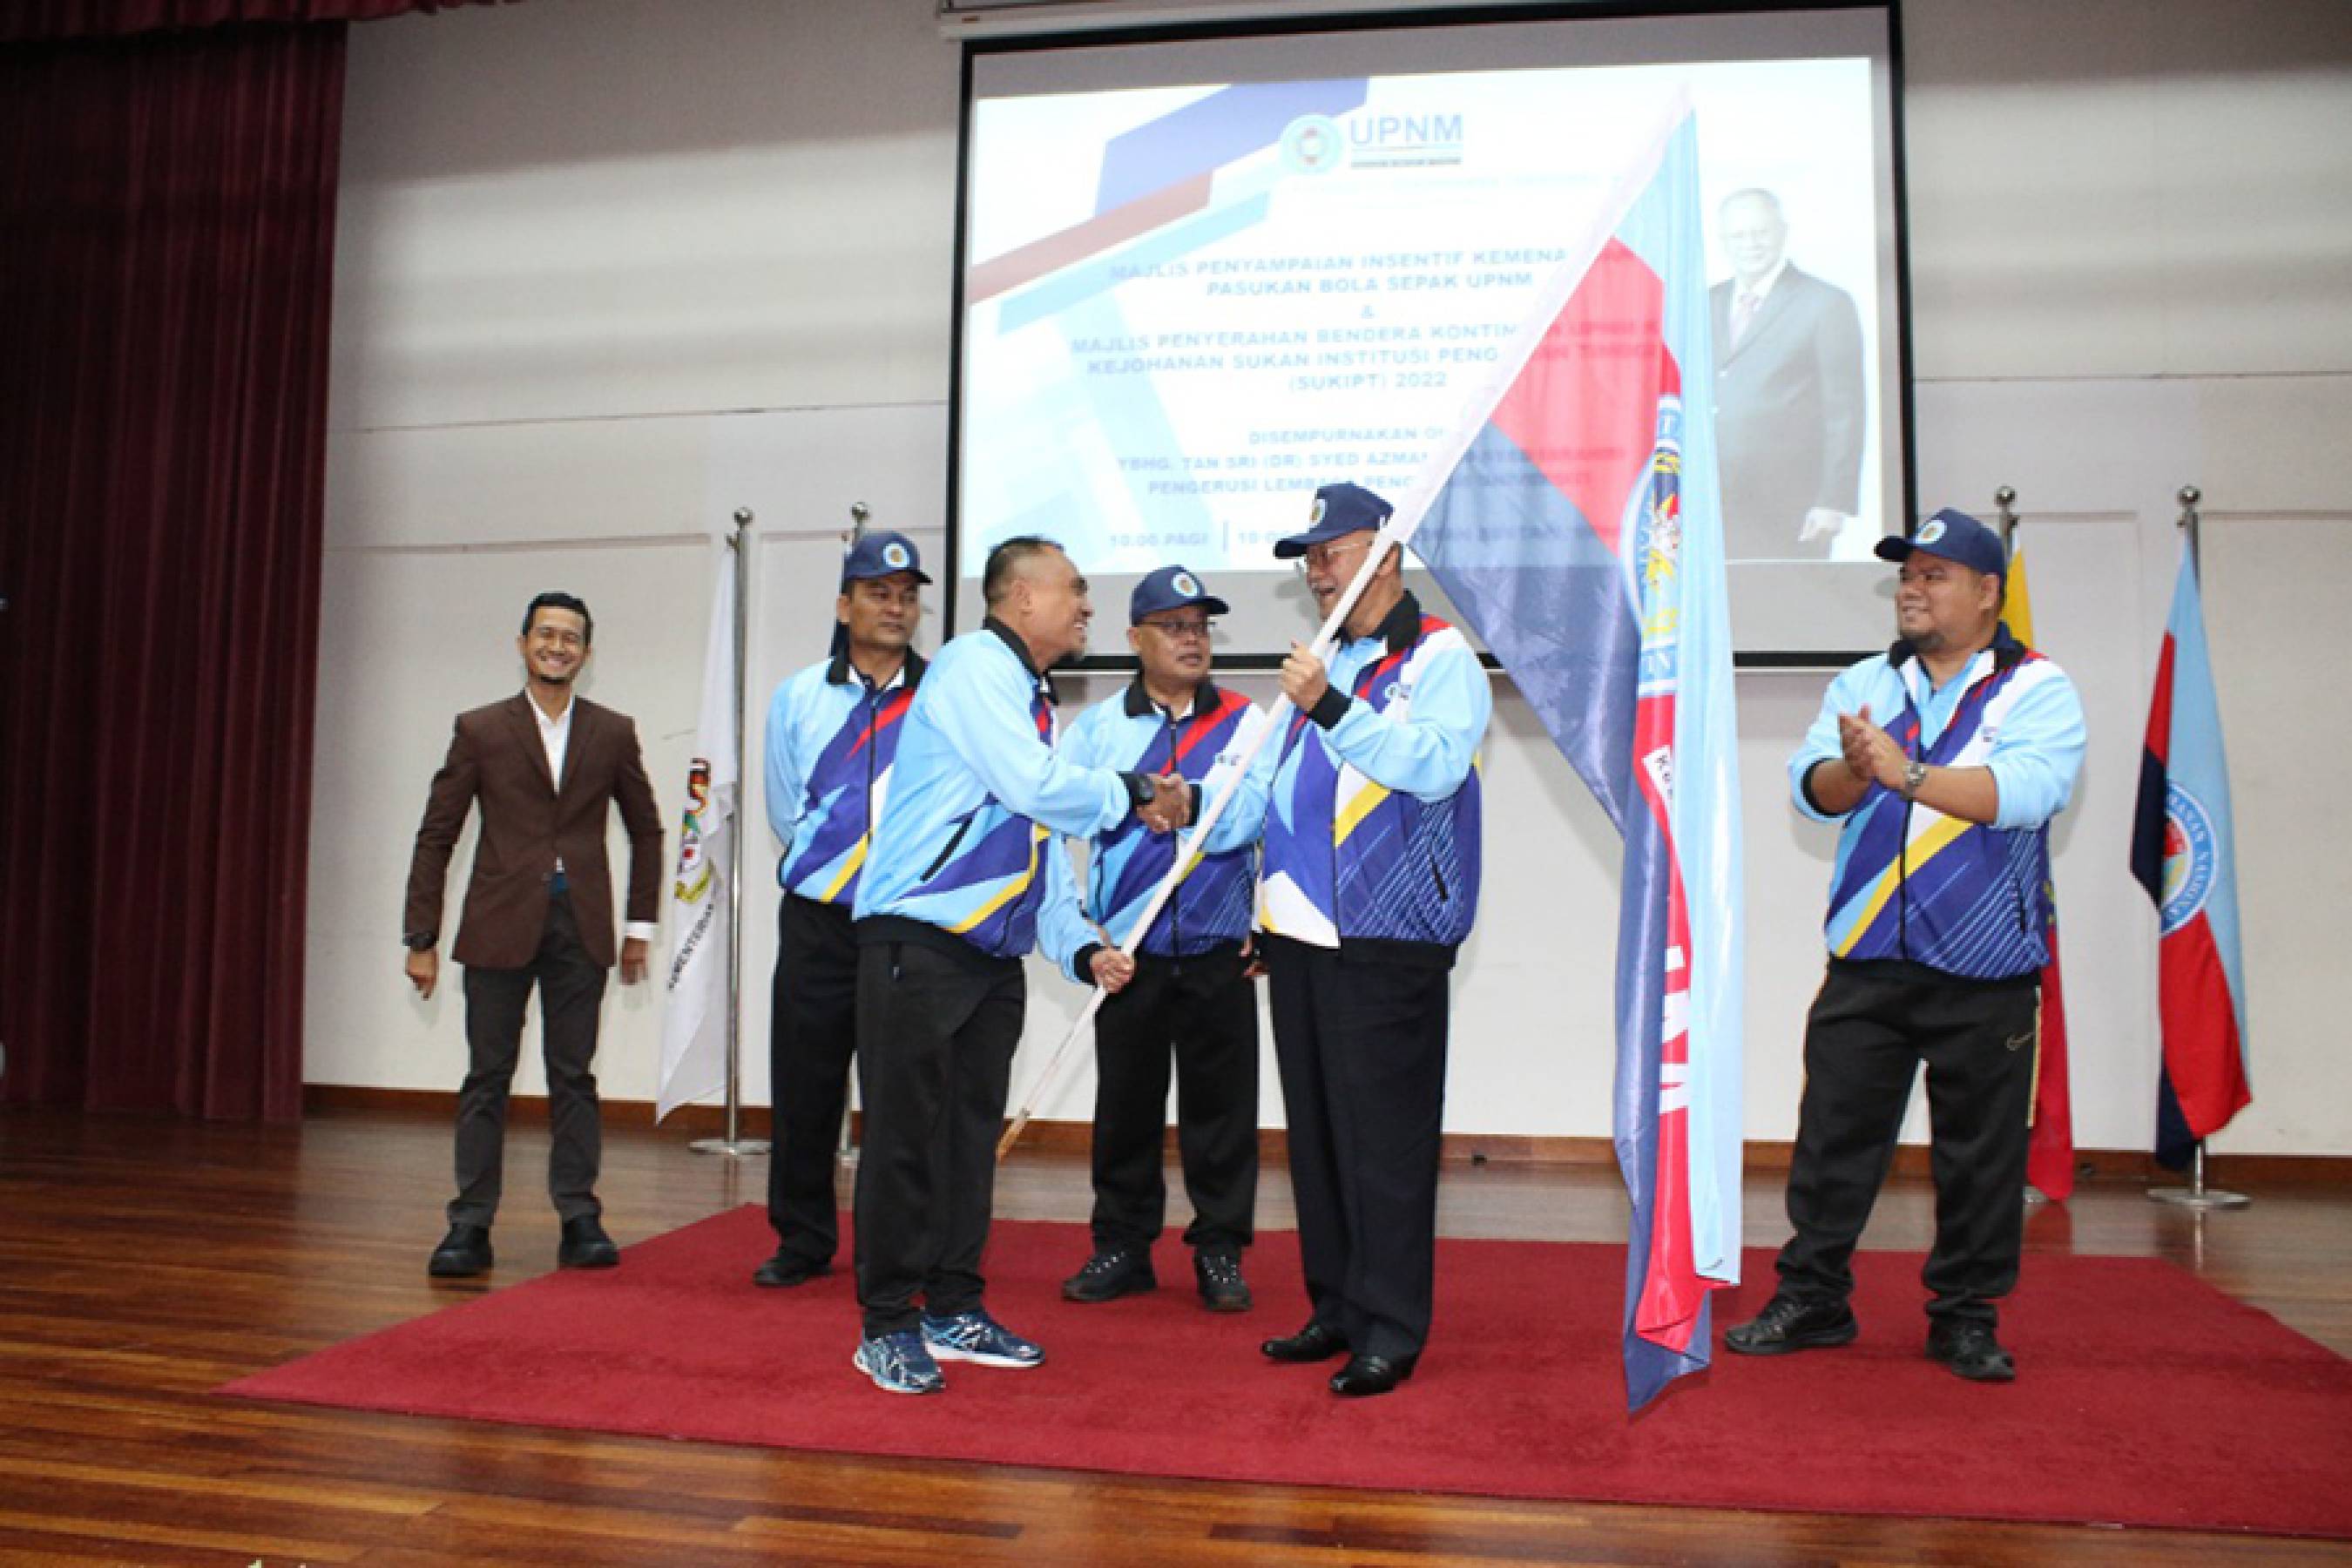 Majlis Pemberian Insentif Pasukan Bola Sepak UPNM dan Majlis Penyerahan Bendera Kontijen UPNM Ke Kejohanan Sukan Institusi pengajian tinggi (SUKIPT) 2022